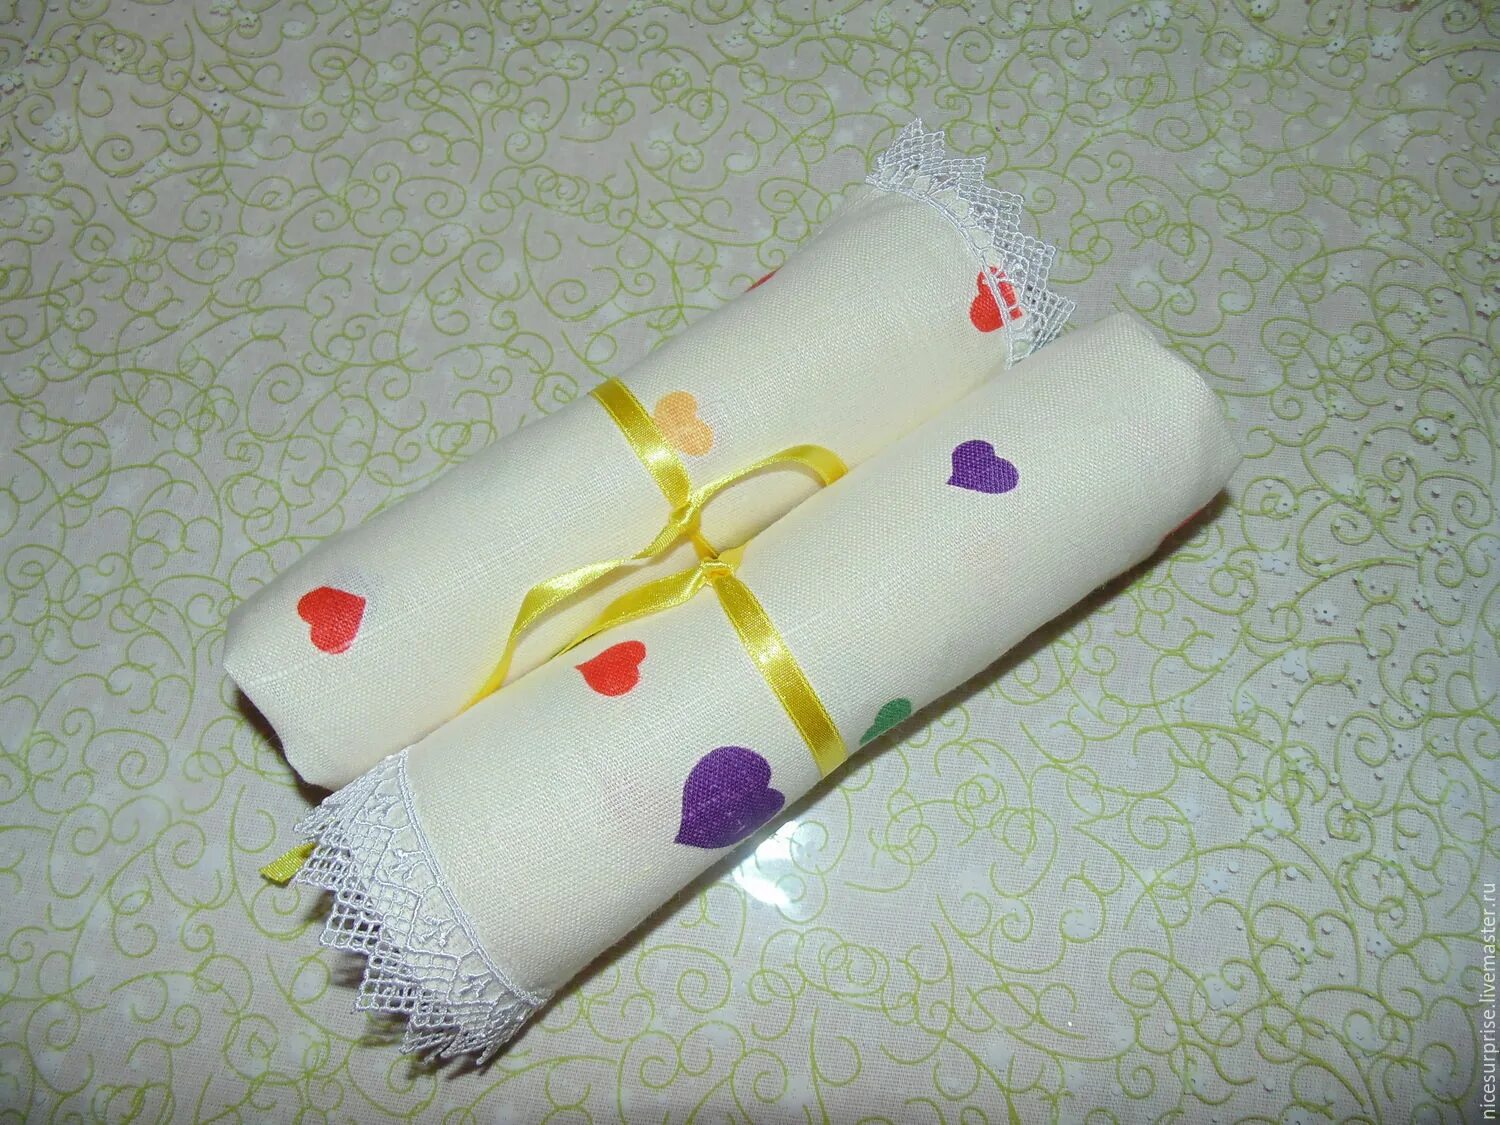 Оформить полотенце. Кухонные полотенца в подарок. Красиво упаковать полотенце. Красивые полотенца в подарок. Красиво упаковать полотенца для подарка.